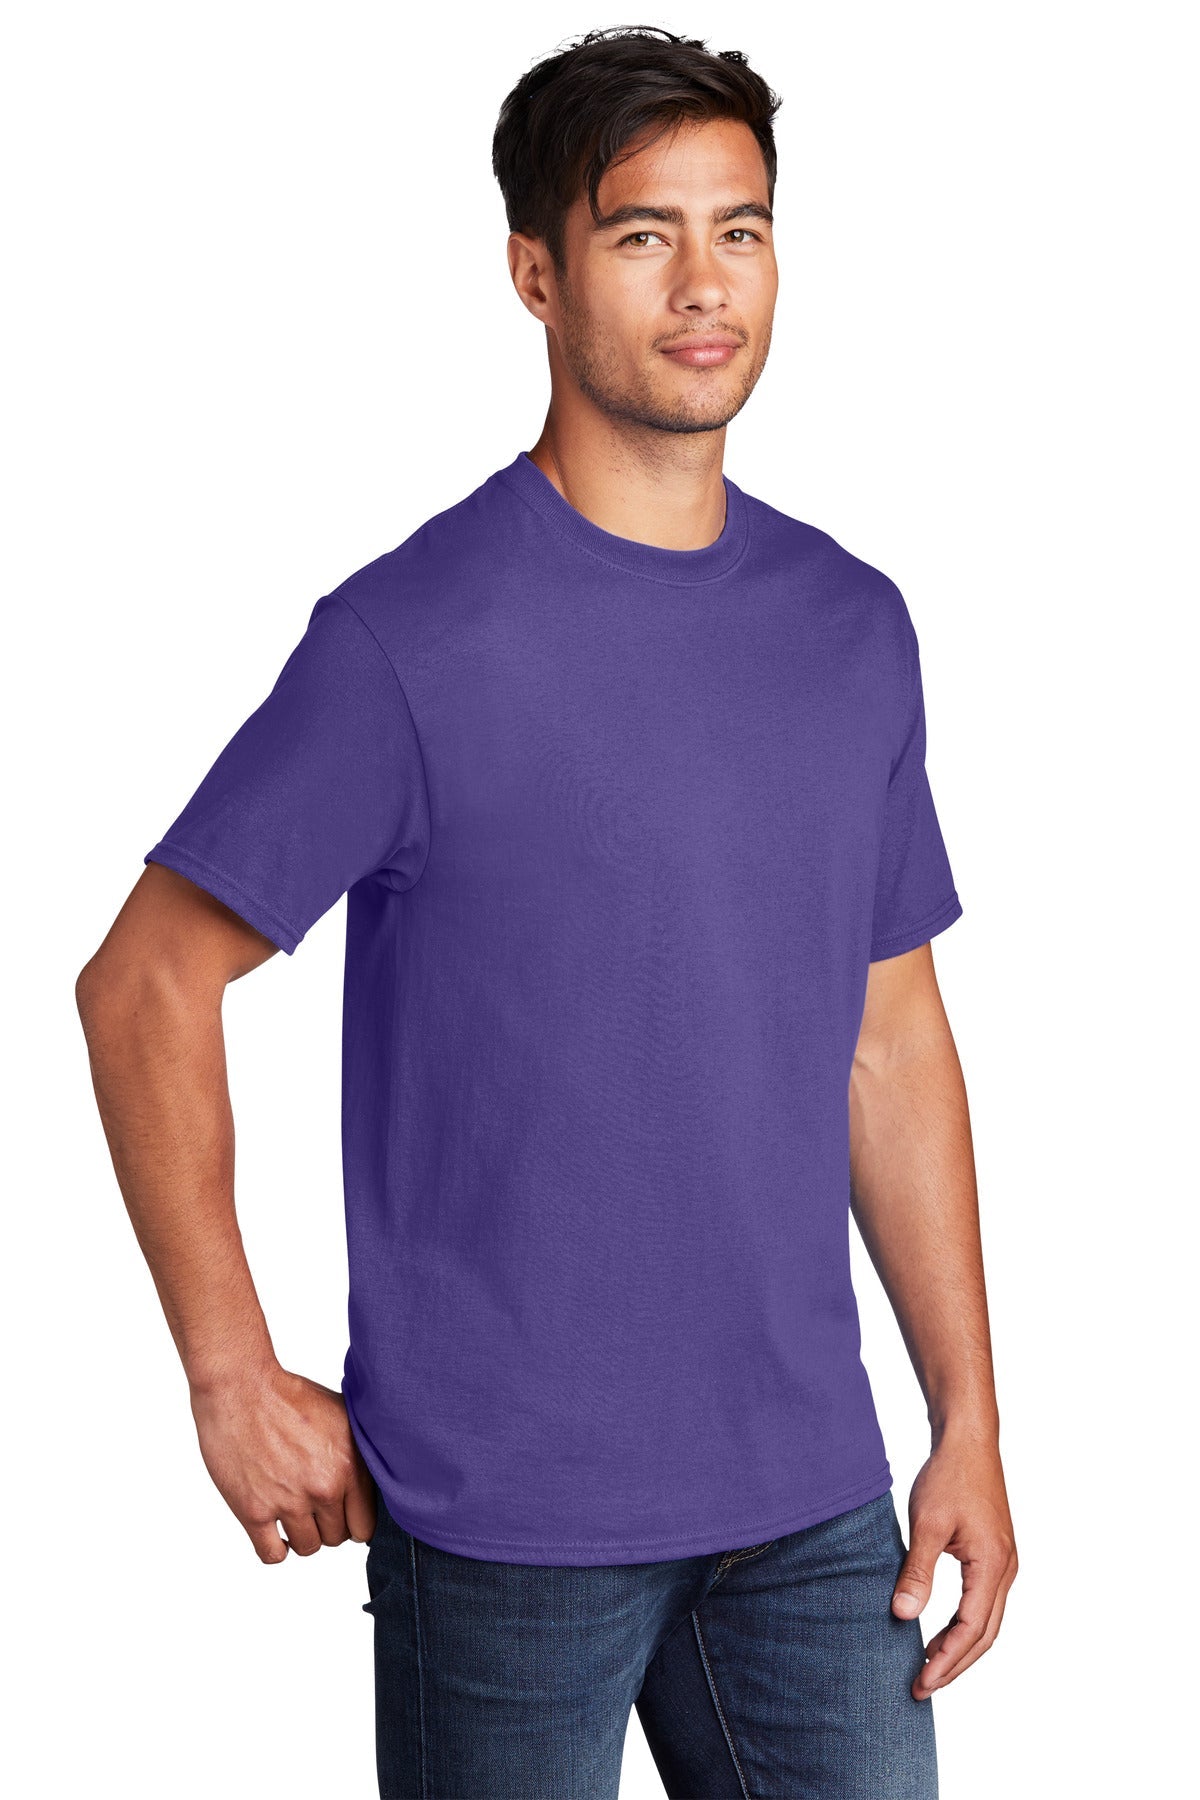 Port & Company Core Cotton DTG Tee PC54DTG - BT Imprintables Shirts